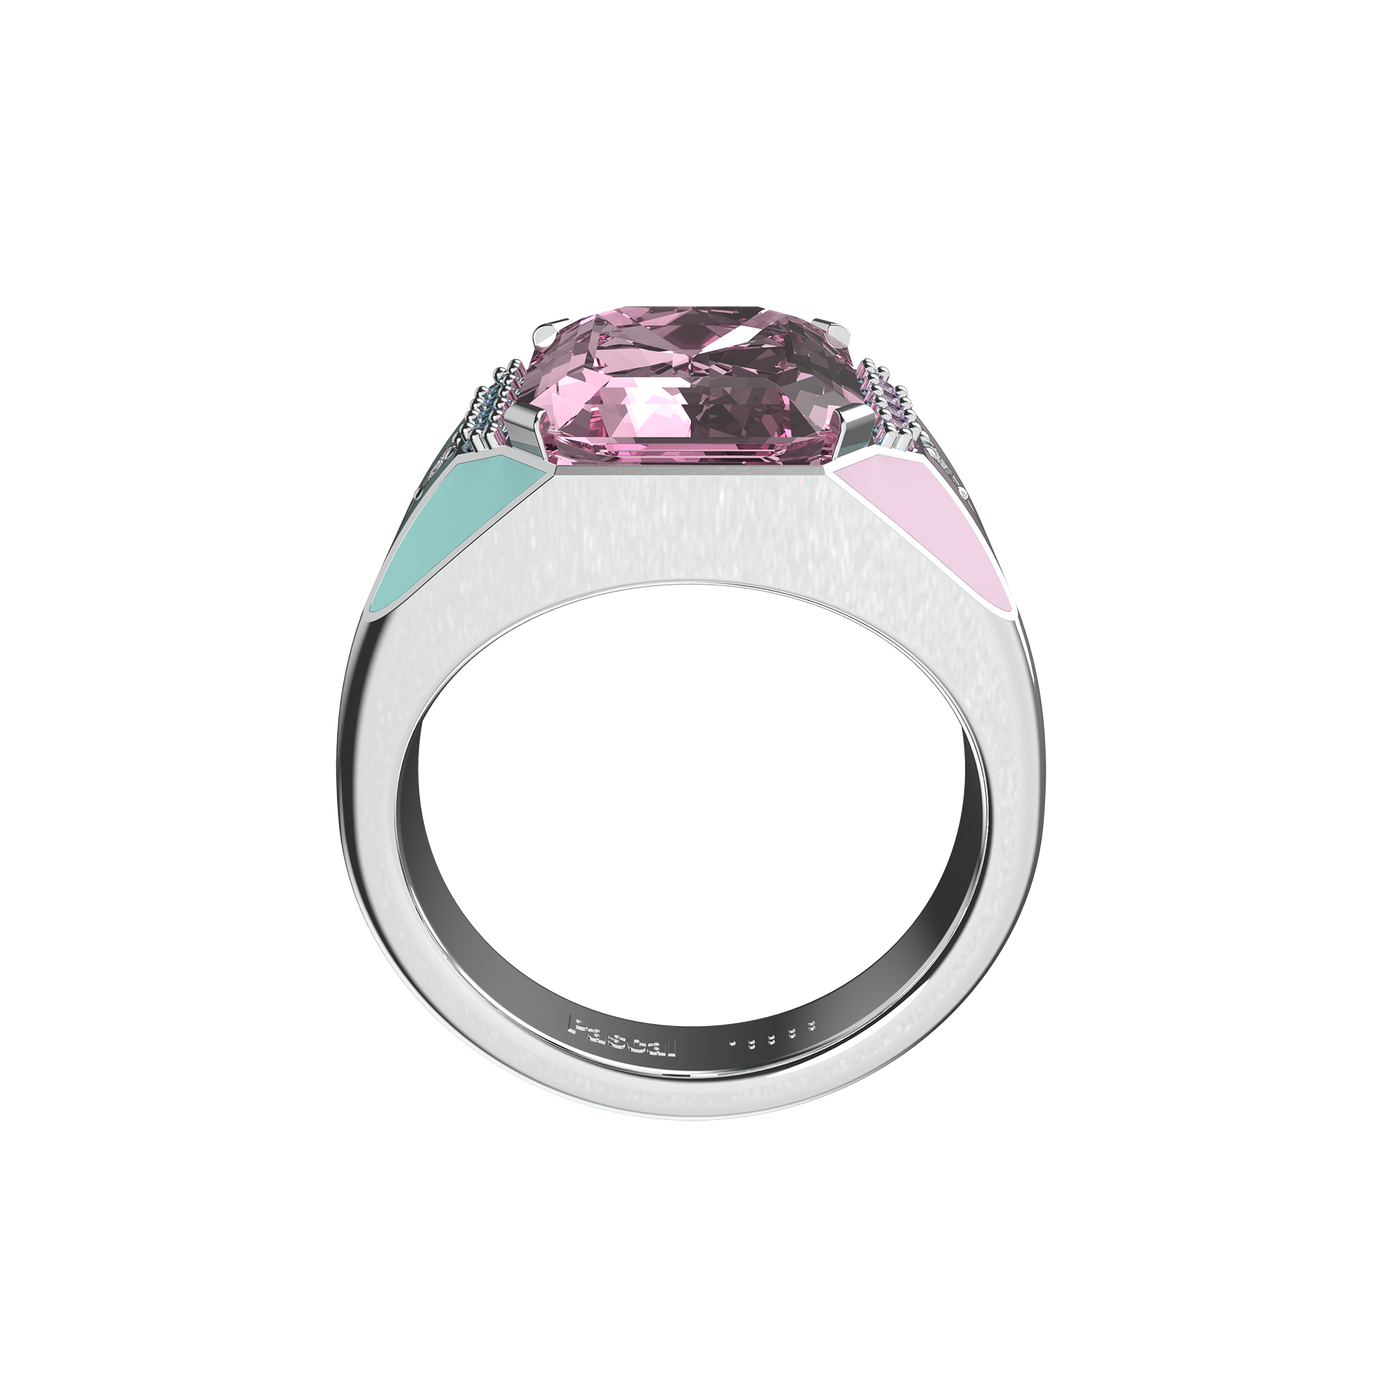 Artdeco Prism Diamond Cocktail Ring